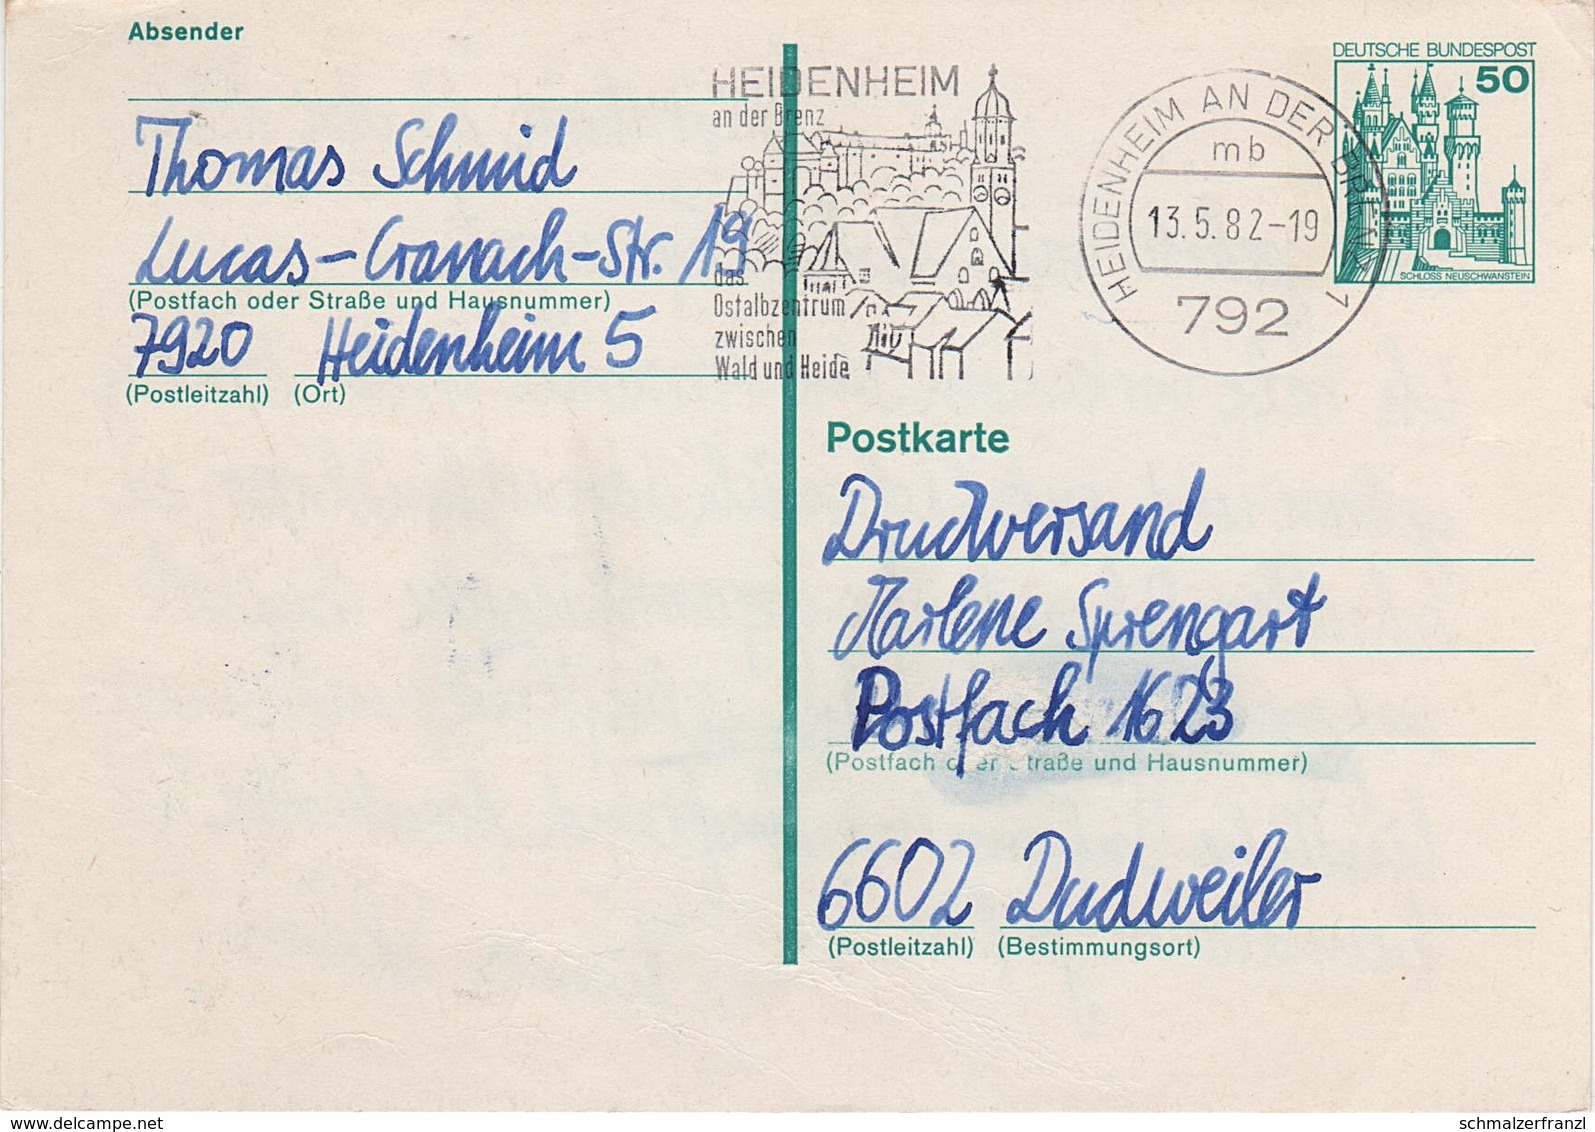 Postkarte Ganzsache BRD Deutschland Bundespost Deutsche Post Briefmarke 50 Pfennig Neuschwanstein Stempel Heidenheim - Cartes Postales - Oblitérées